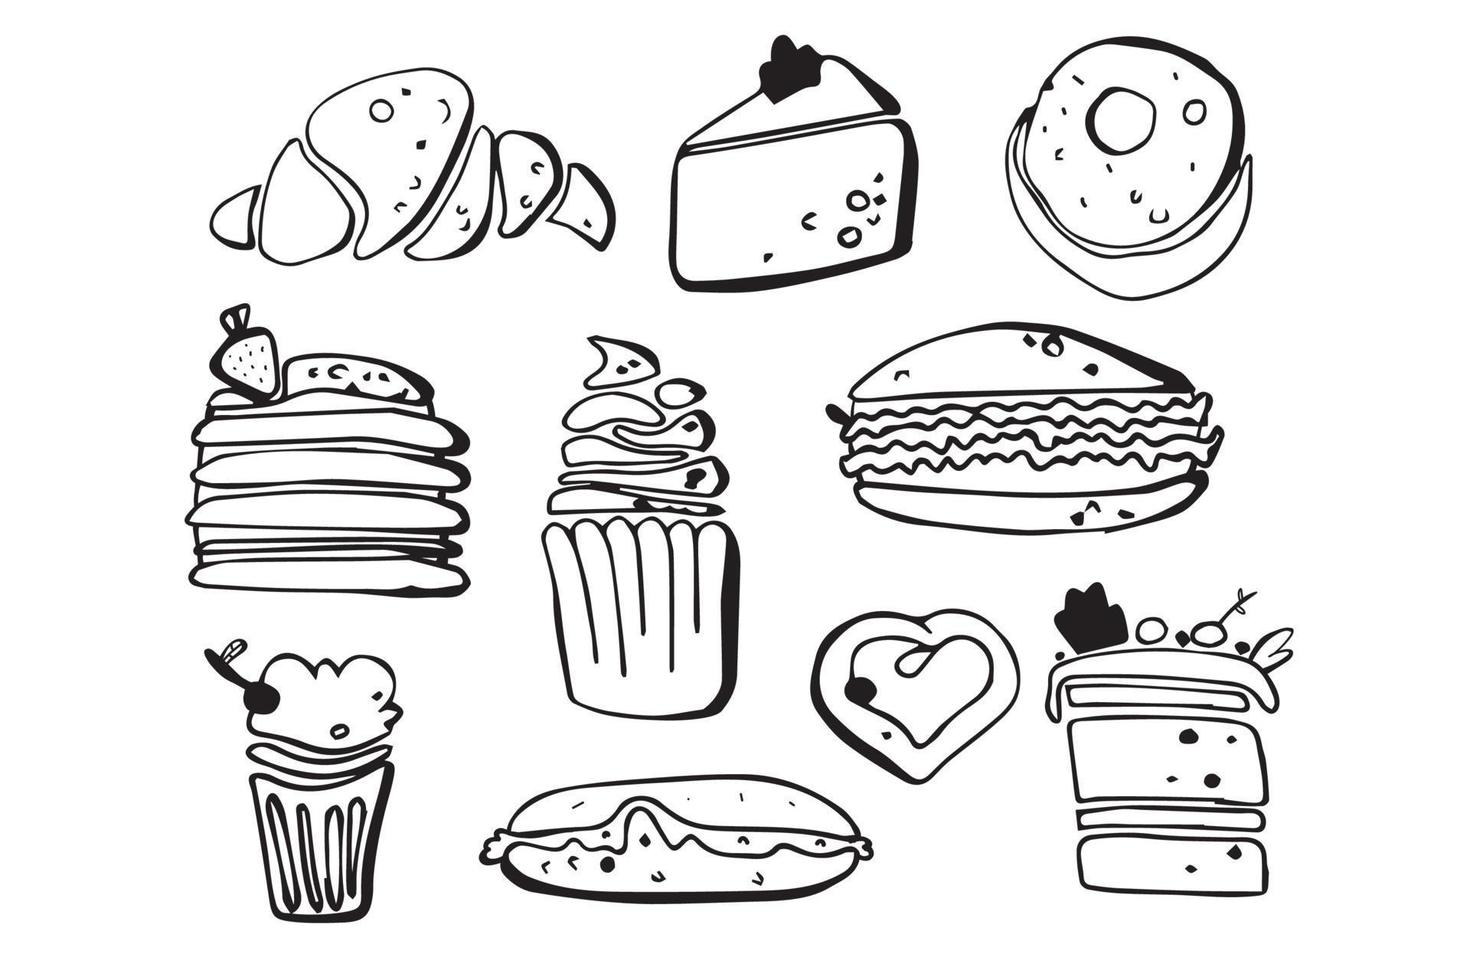 met de hand getekende snoepjes, desserts en snoepjes. ijs, cake, donut. vectorkrabbels. zwart en wit. vector